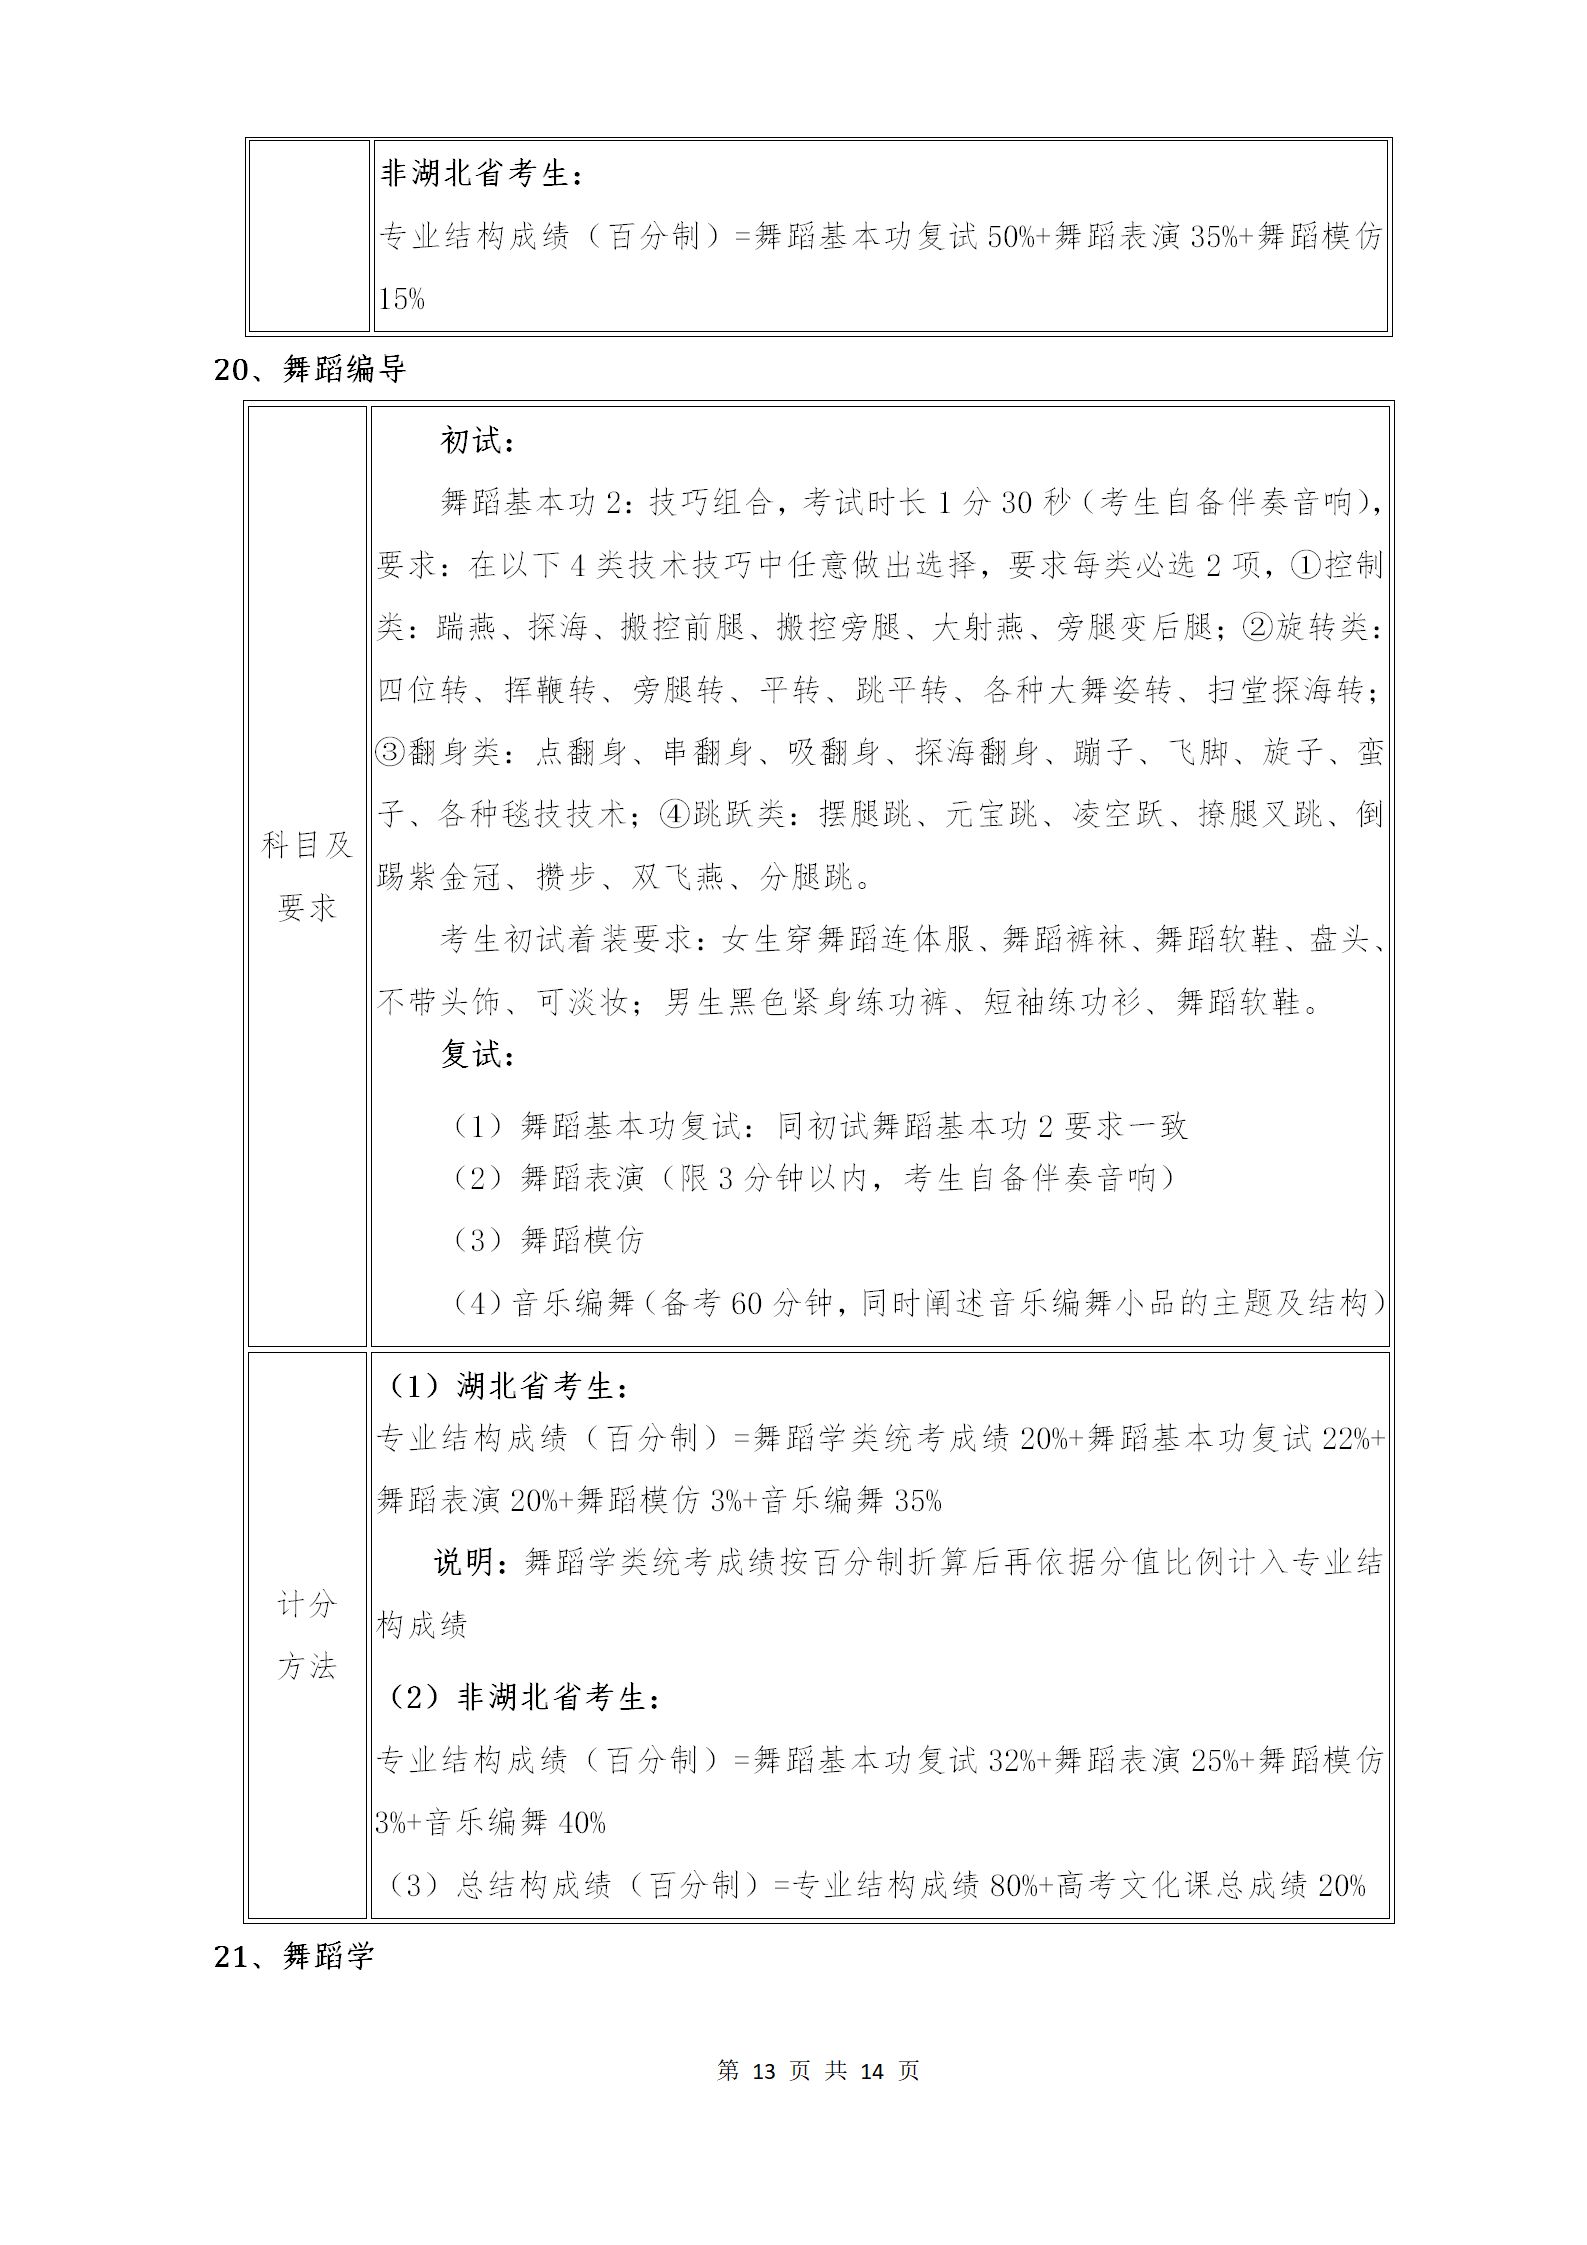 附件1：武汉音乐学院2021年普通本科招生专业考试内容和计分方法（调整版）_13.png